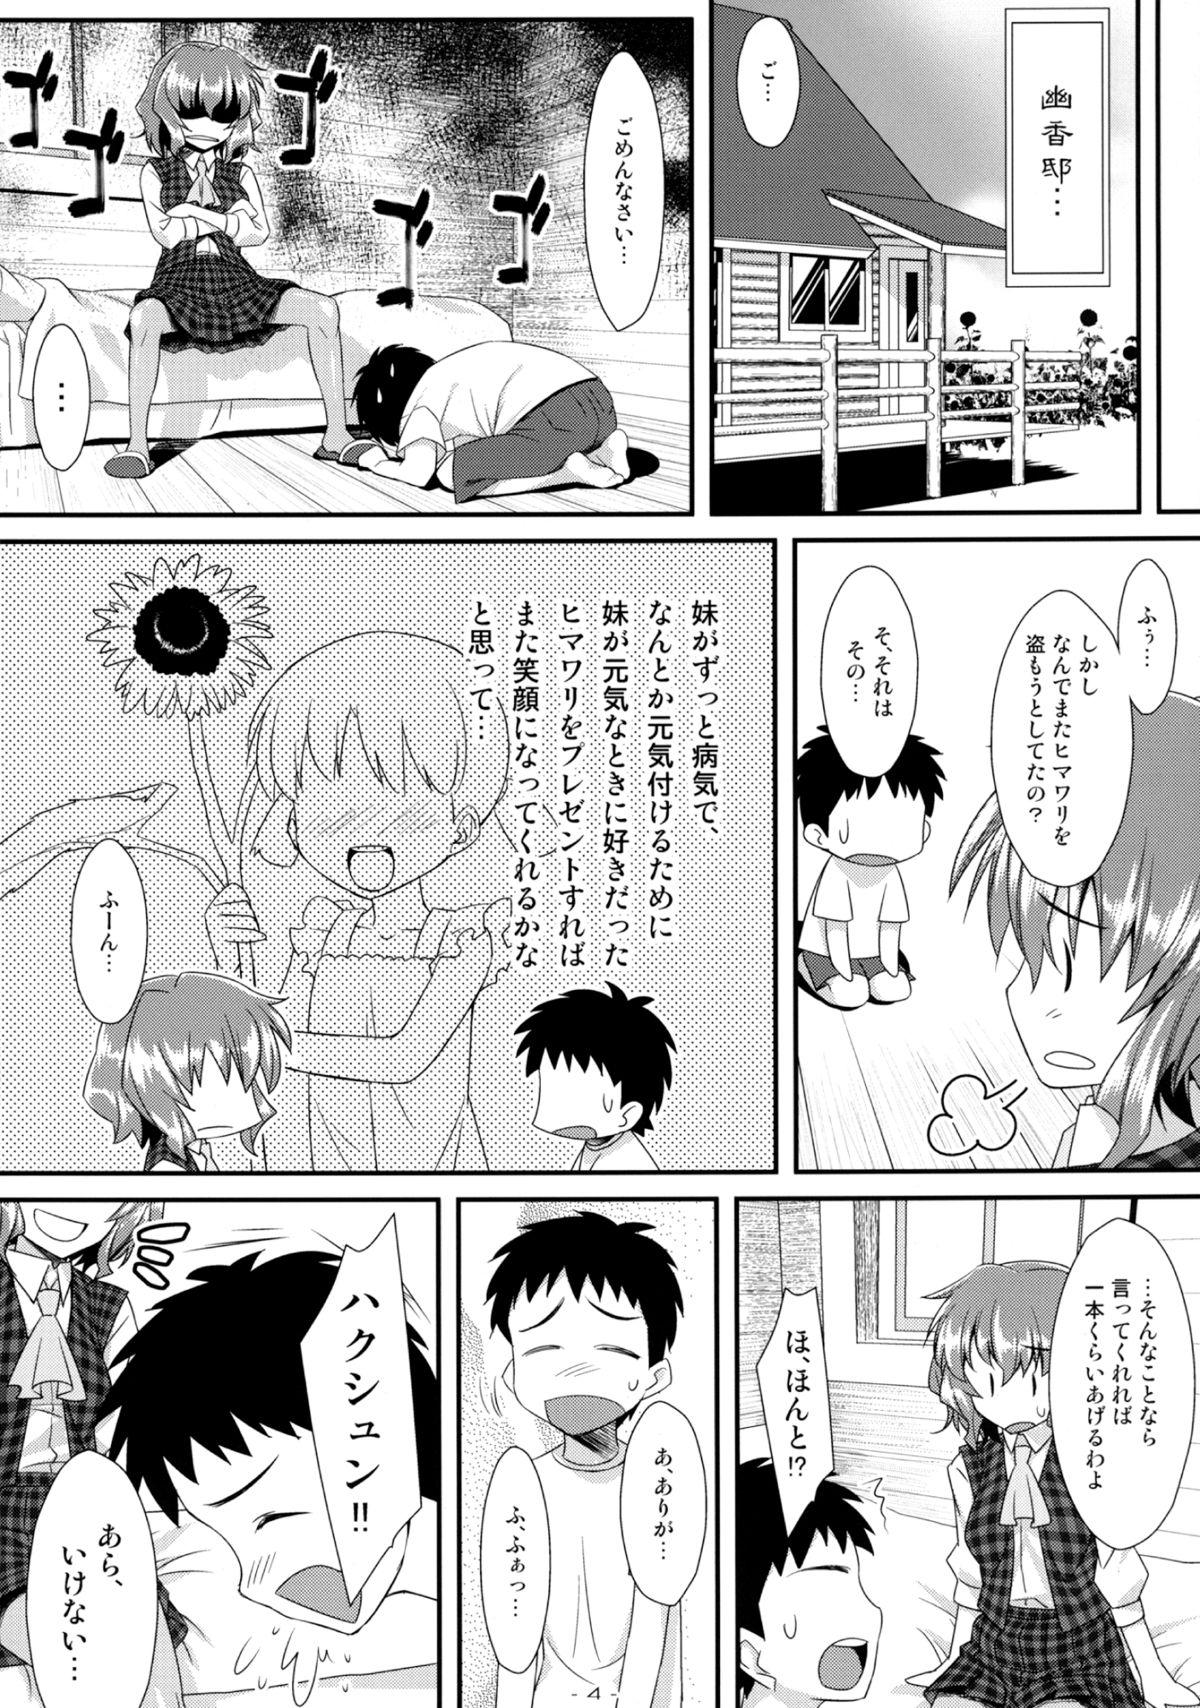 Monstercock Yasei no Chijo ga Arawareta! 5 - Touhou project Chilena - Page 4